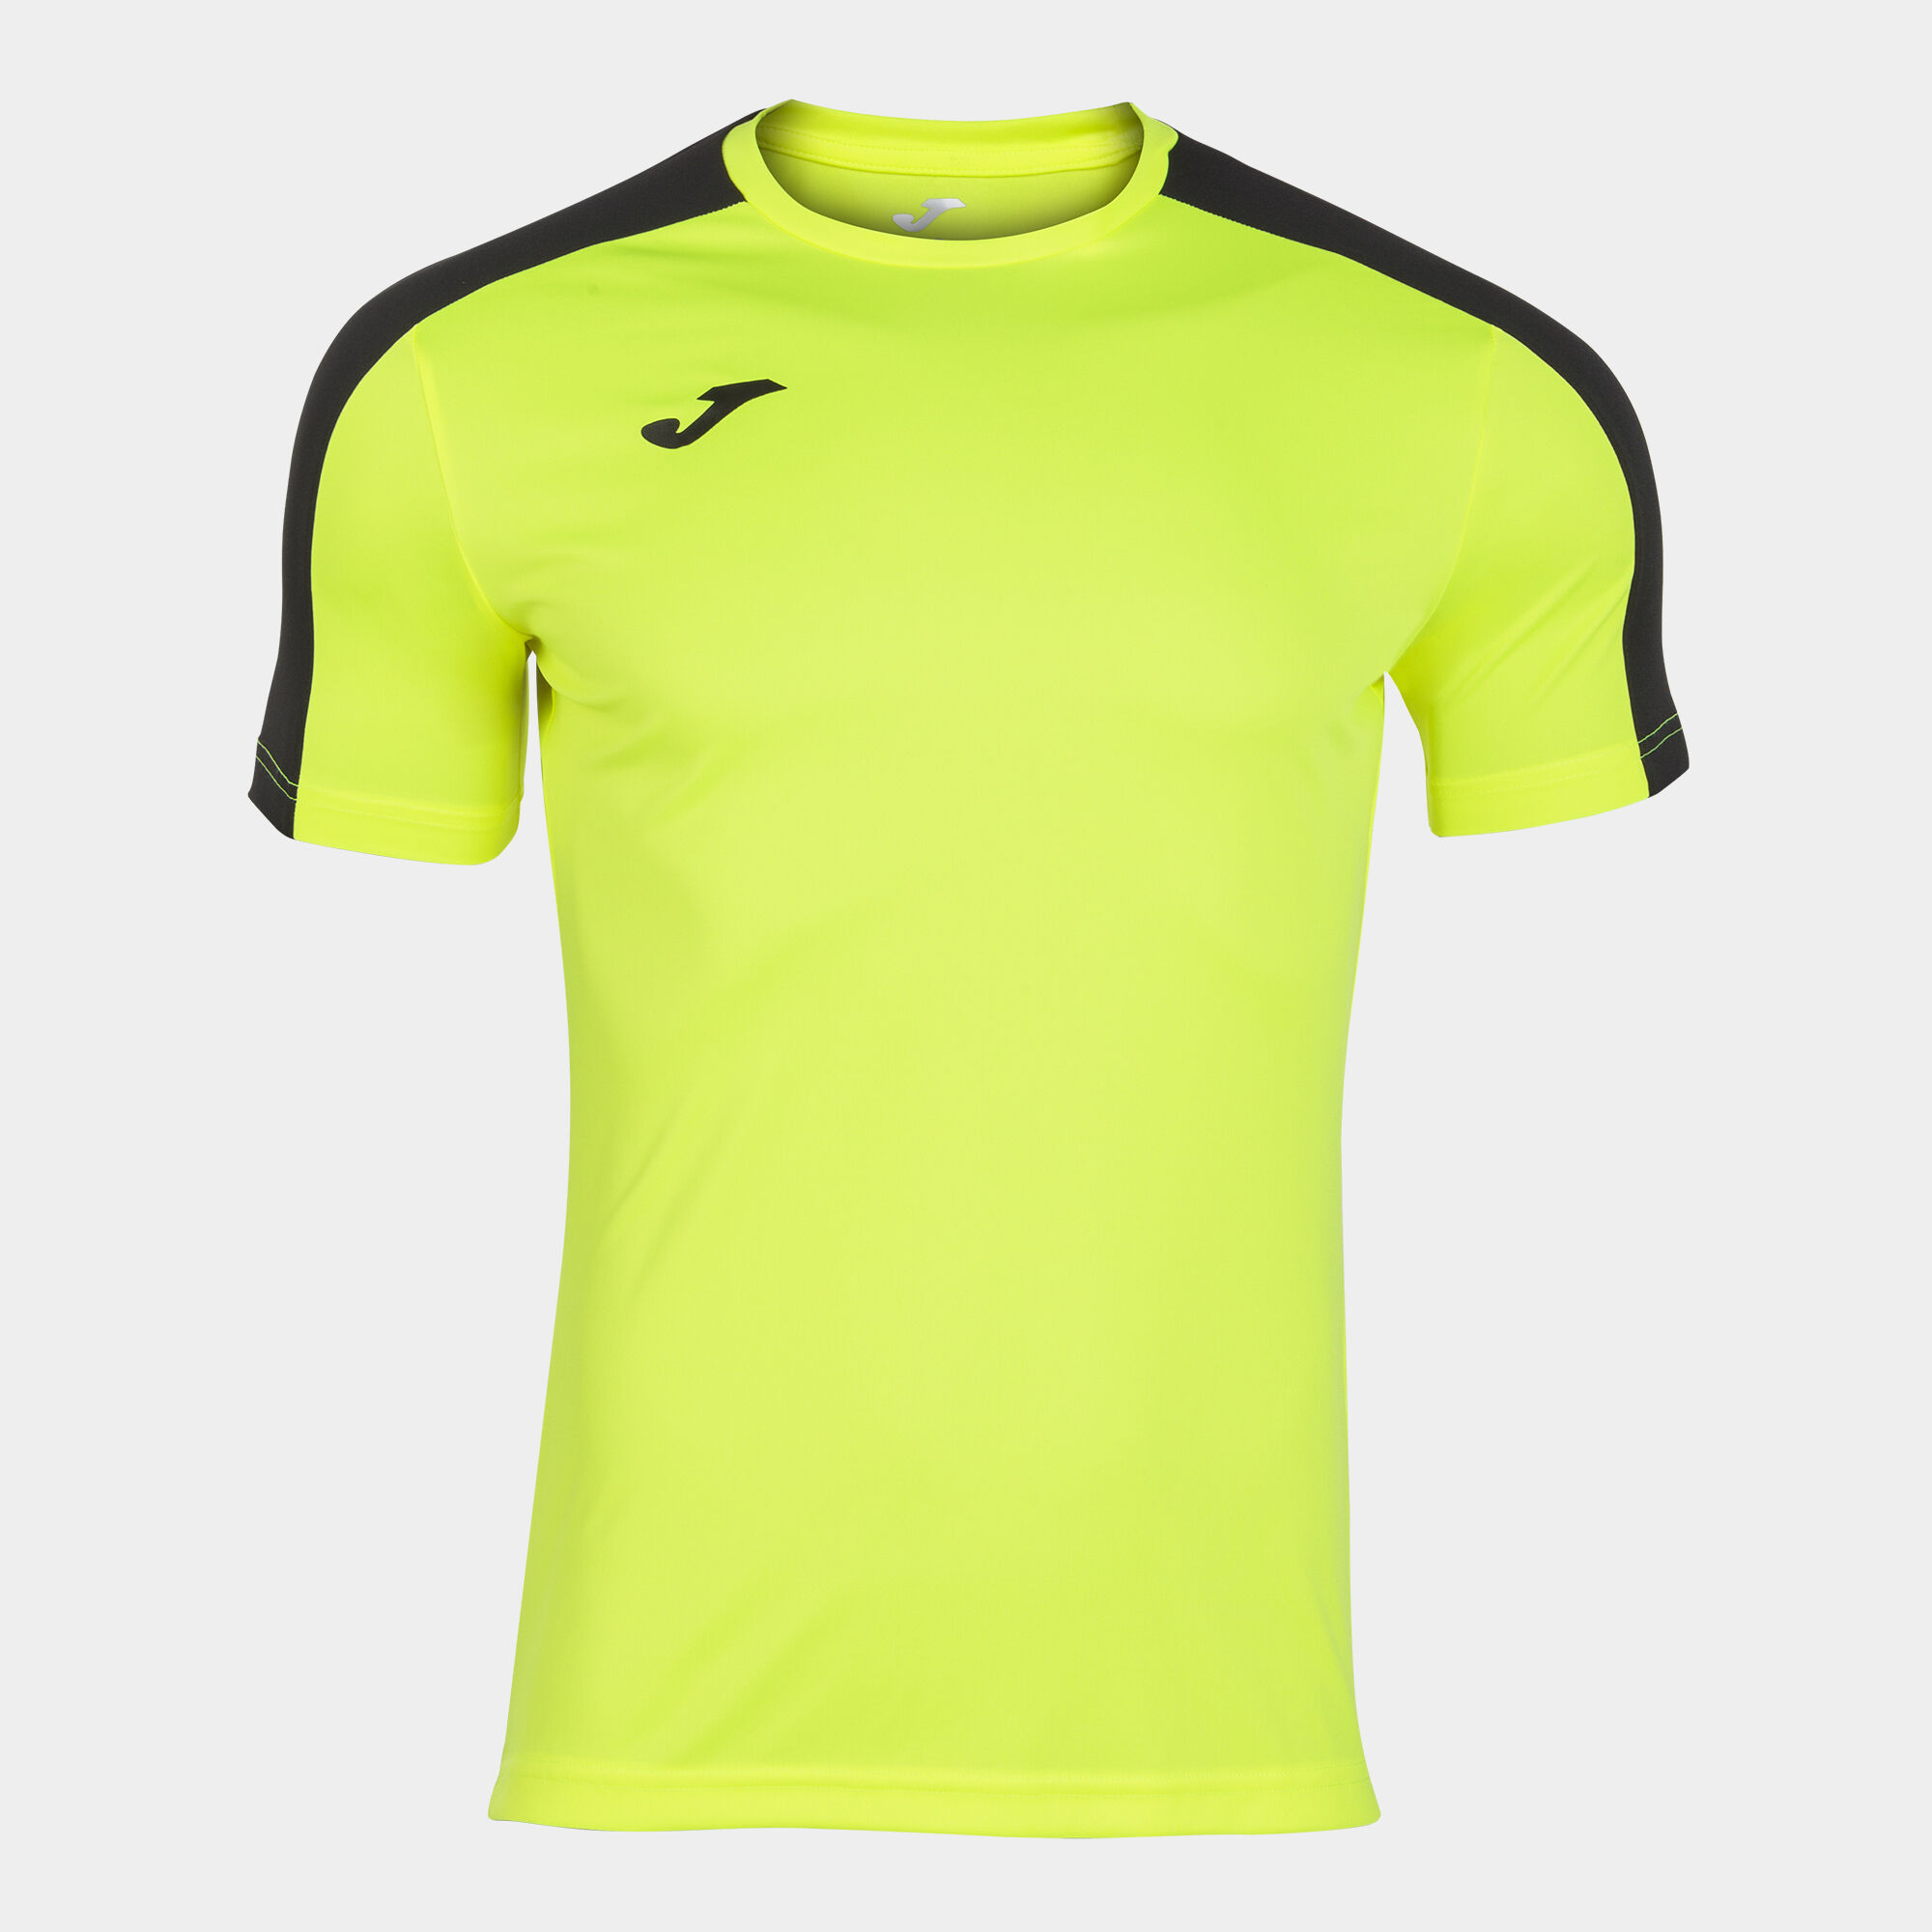 Shirt short sleeve man Academy III fluorescent yellow black